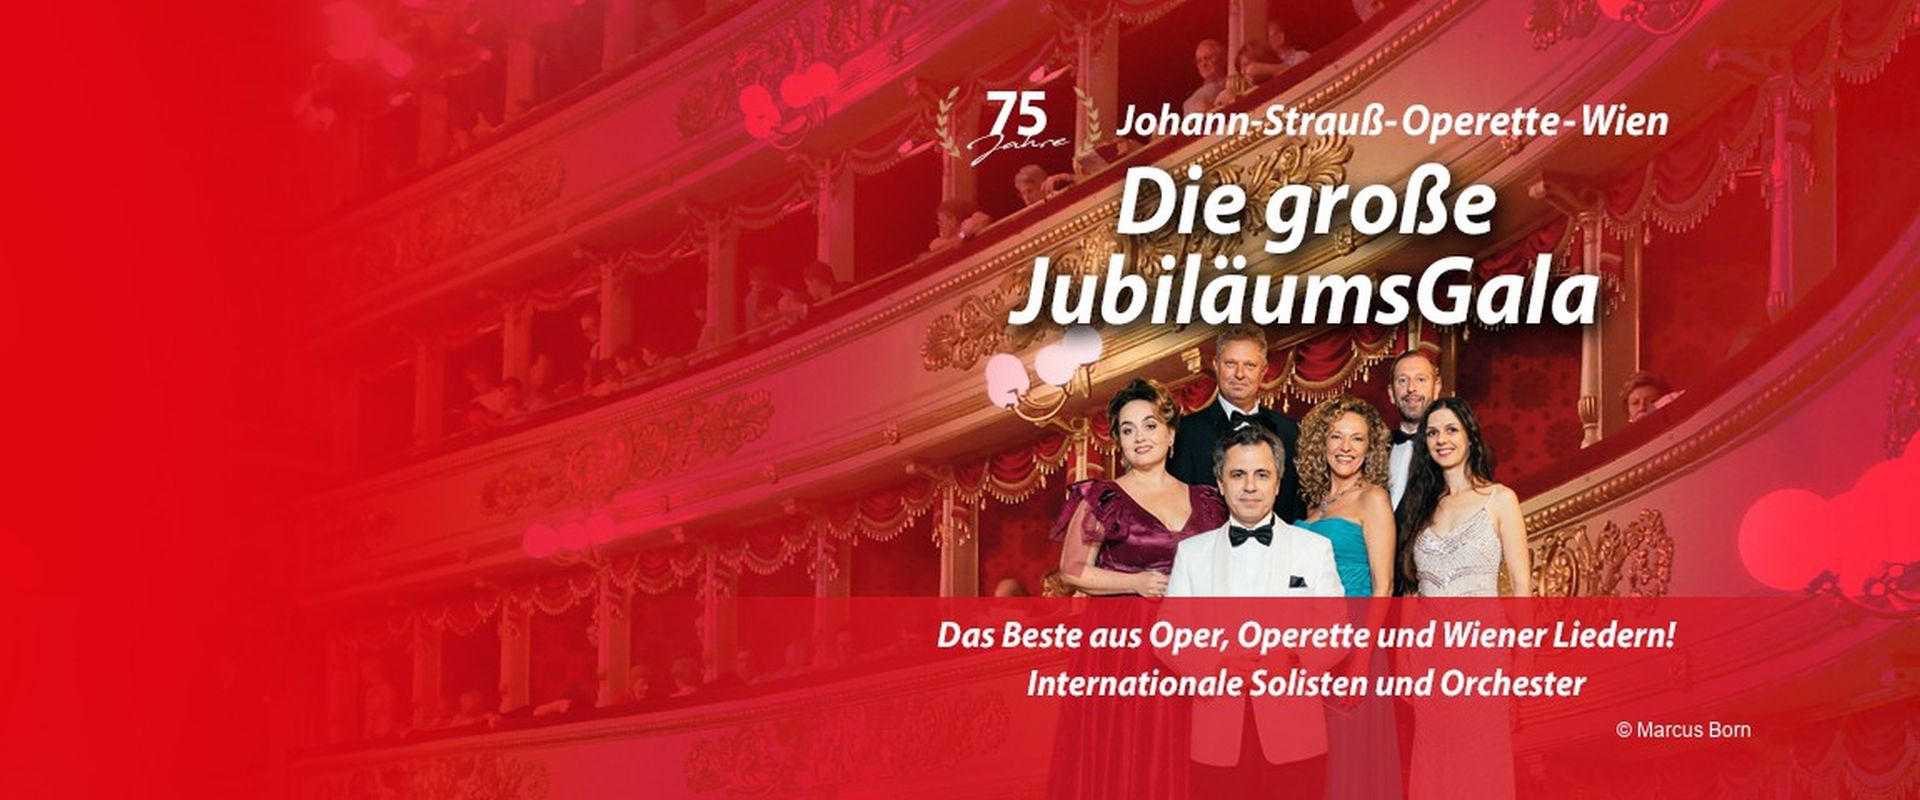 Das Ensemble der großen Jubiläums-Gala vor dem Hintergrund eines Opernhauses.